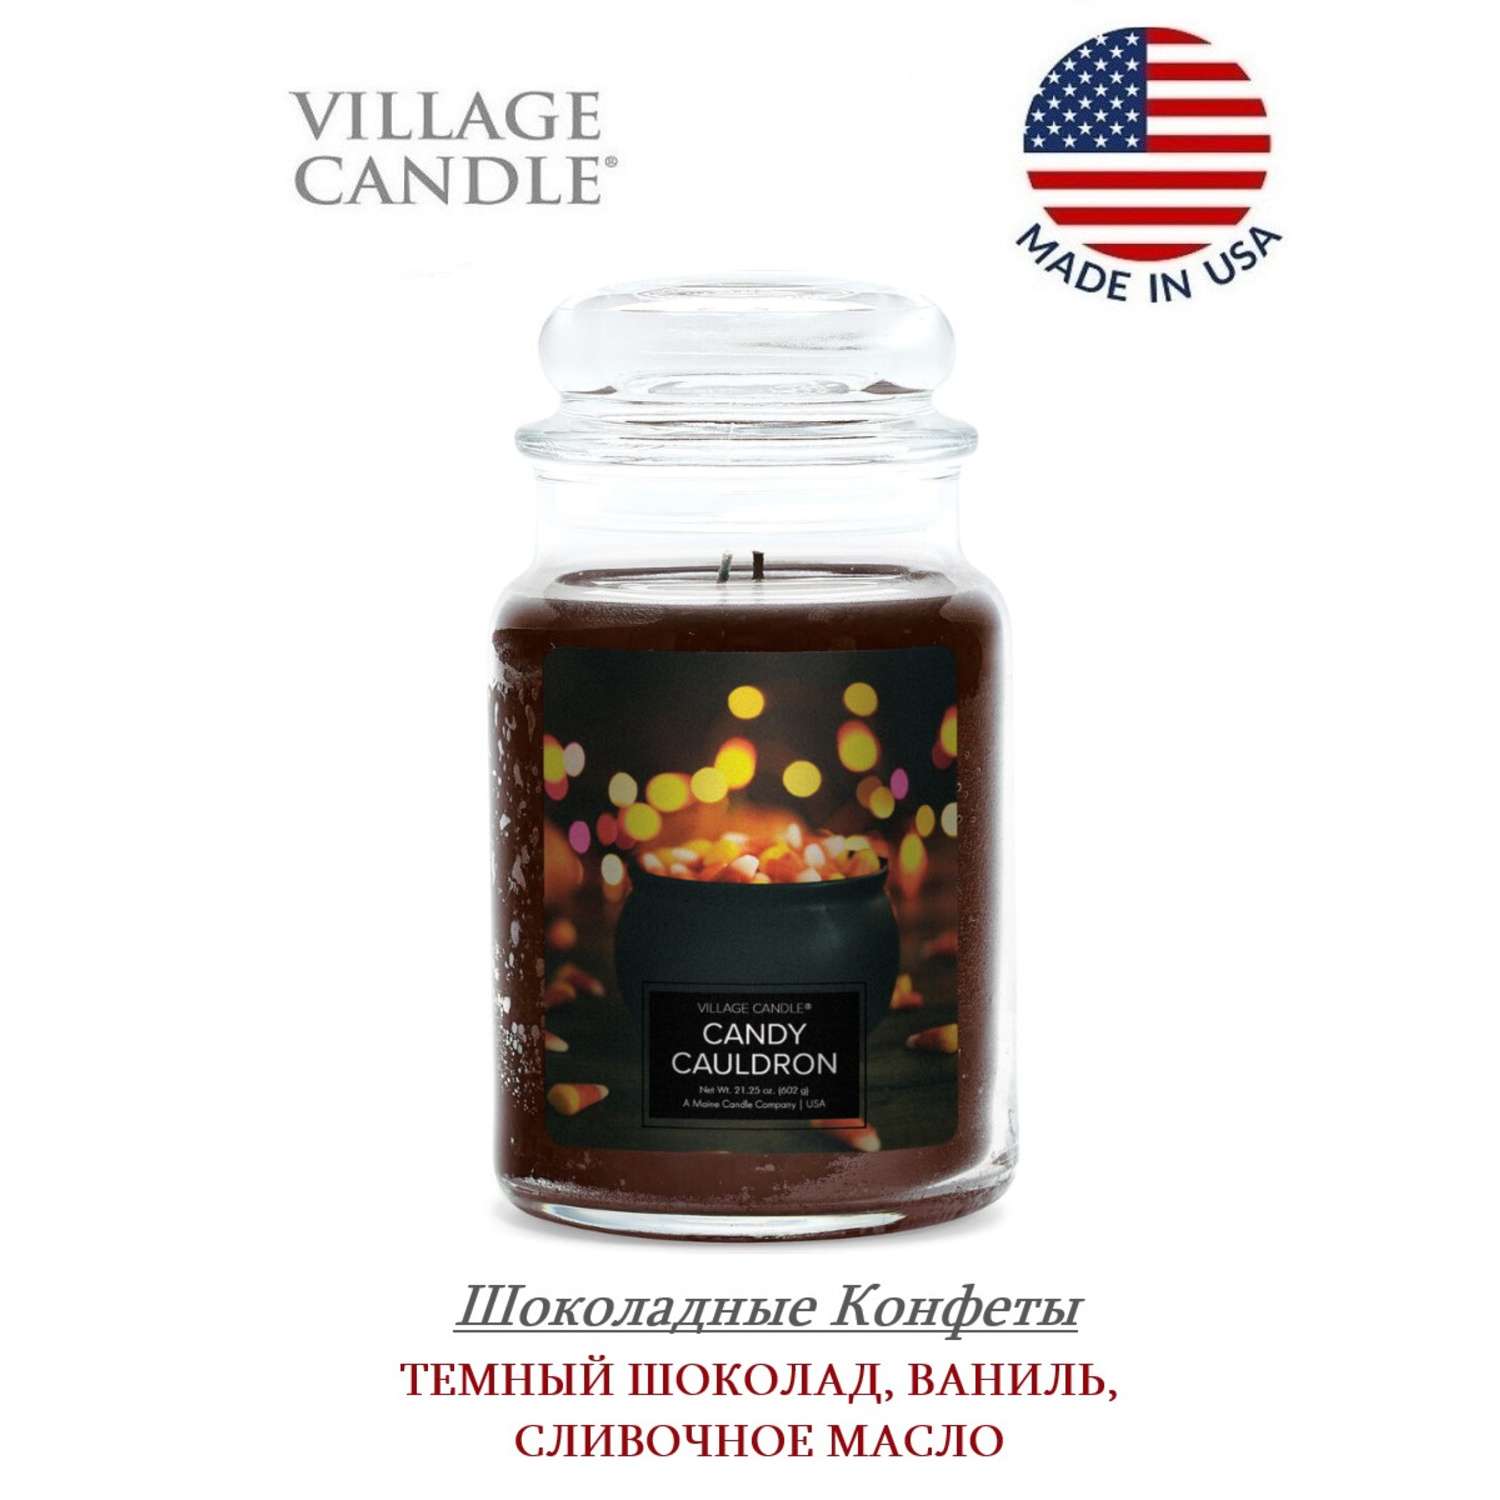 Свеча Village Candle ароматическая Шоколадные Конфеты 4260447 - фото 2